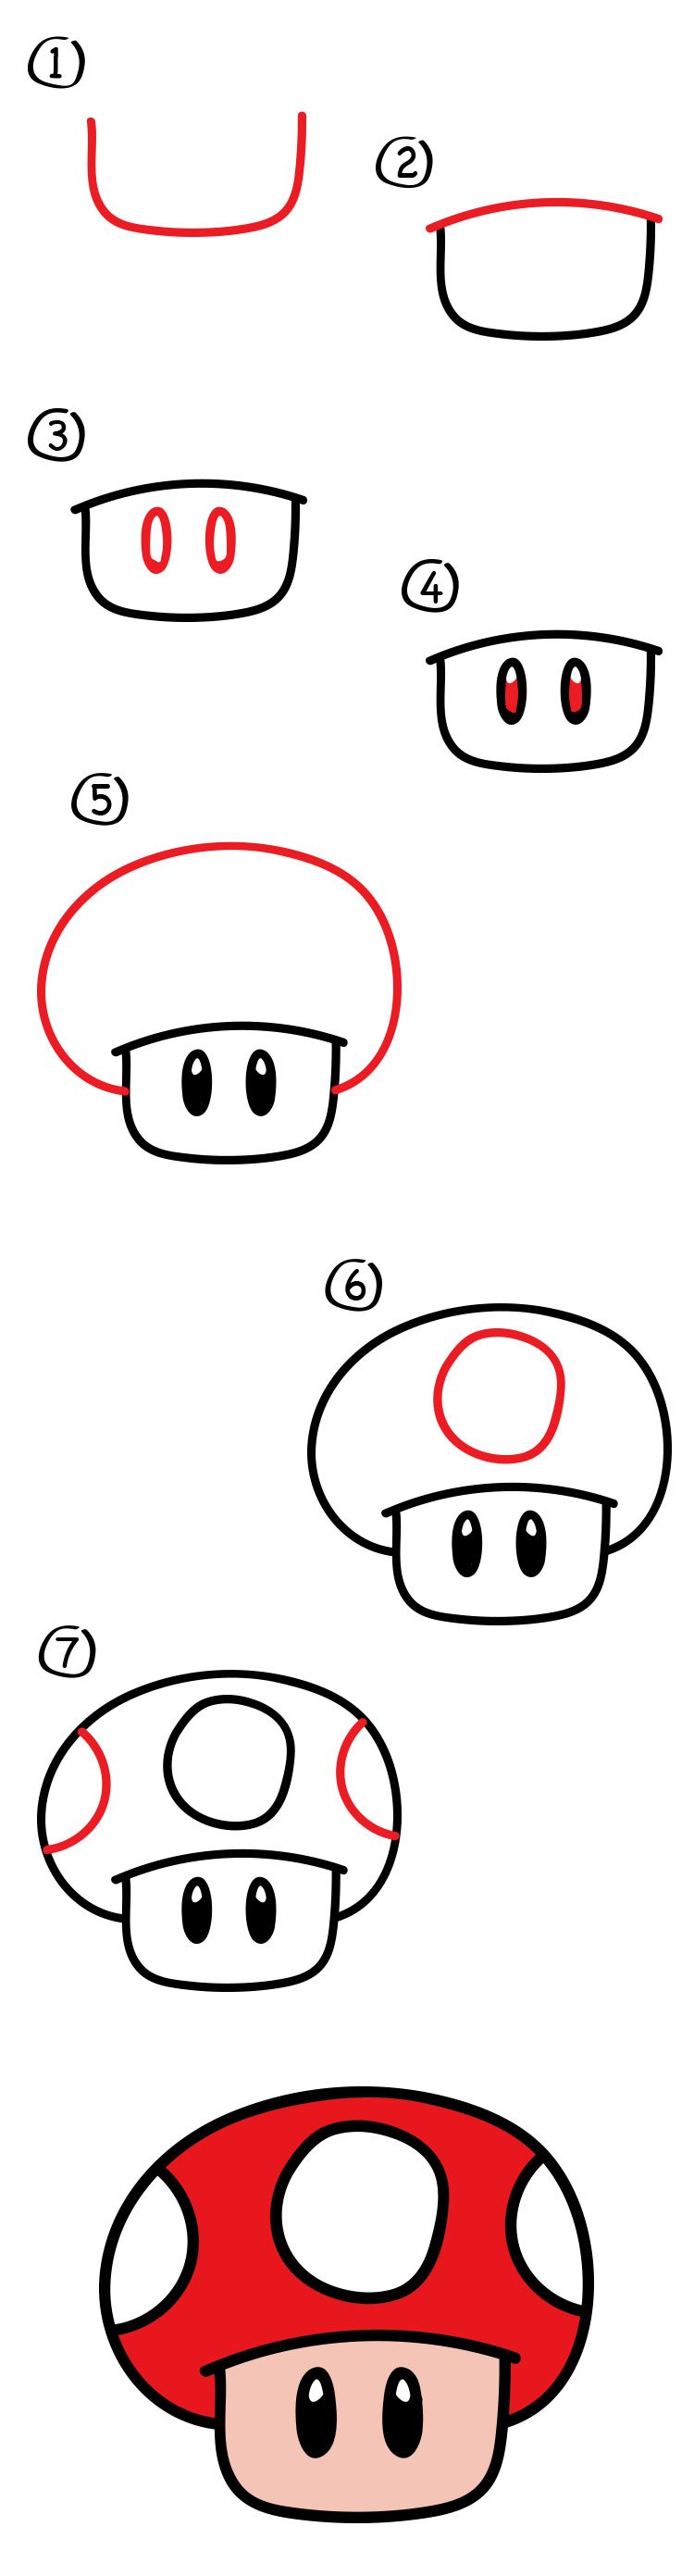 Марио рисунок простой